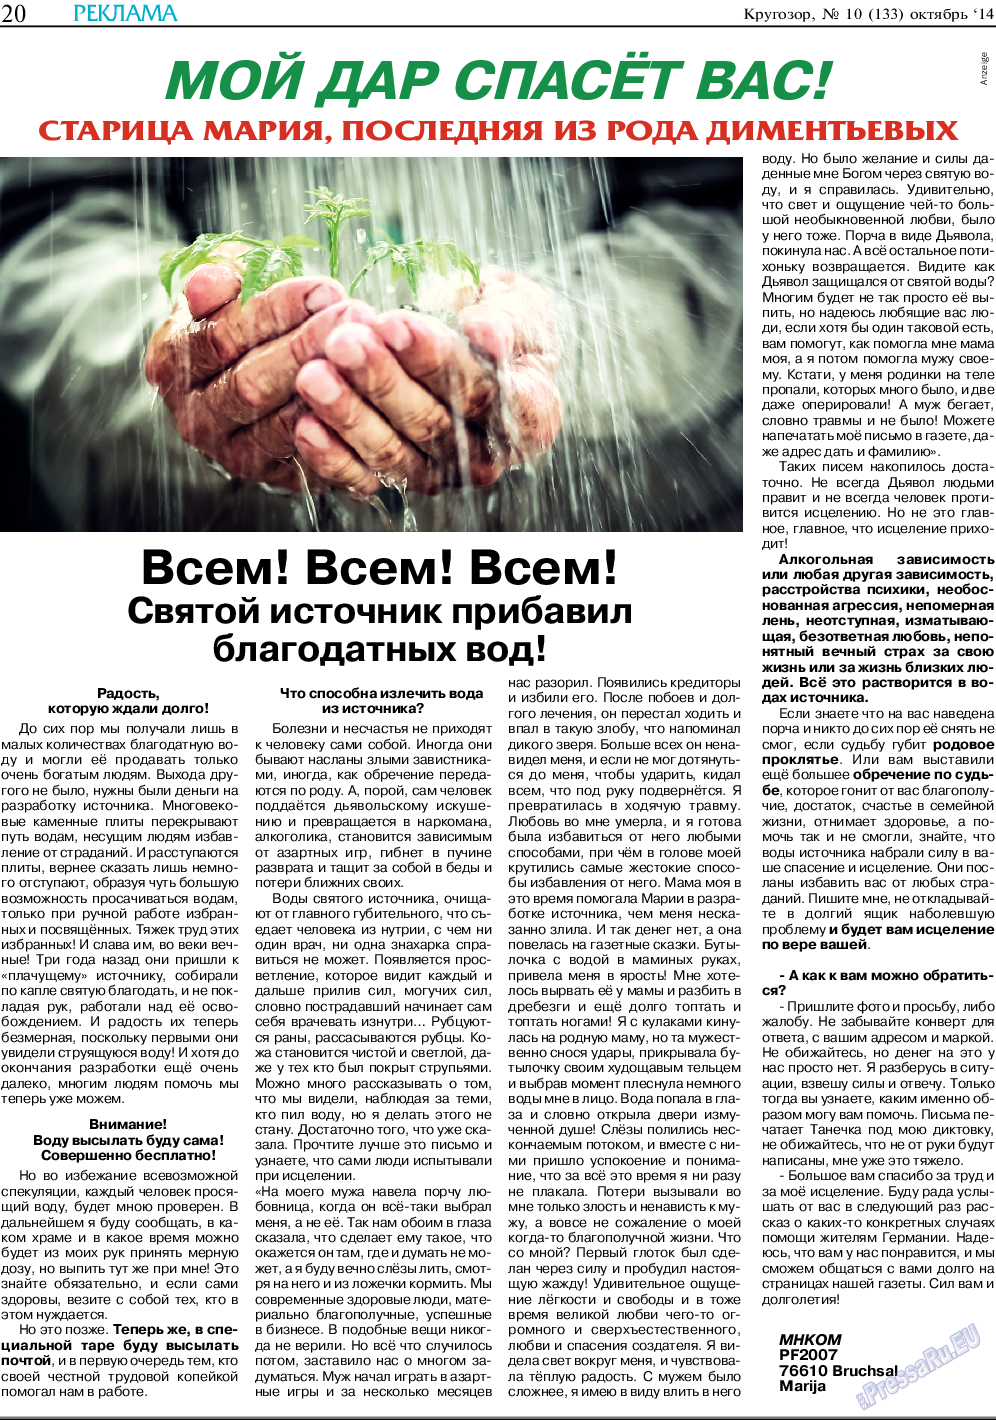 Кругозор, газета. 2014 №10 стр.20